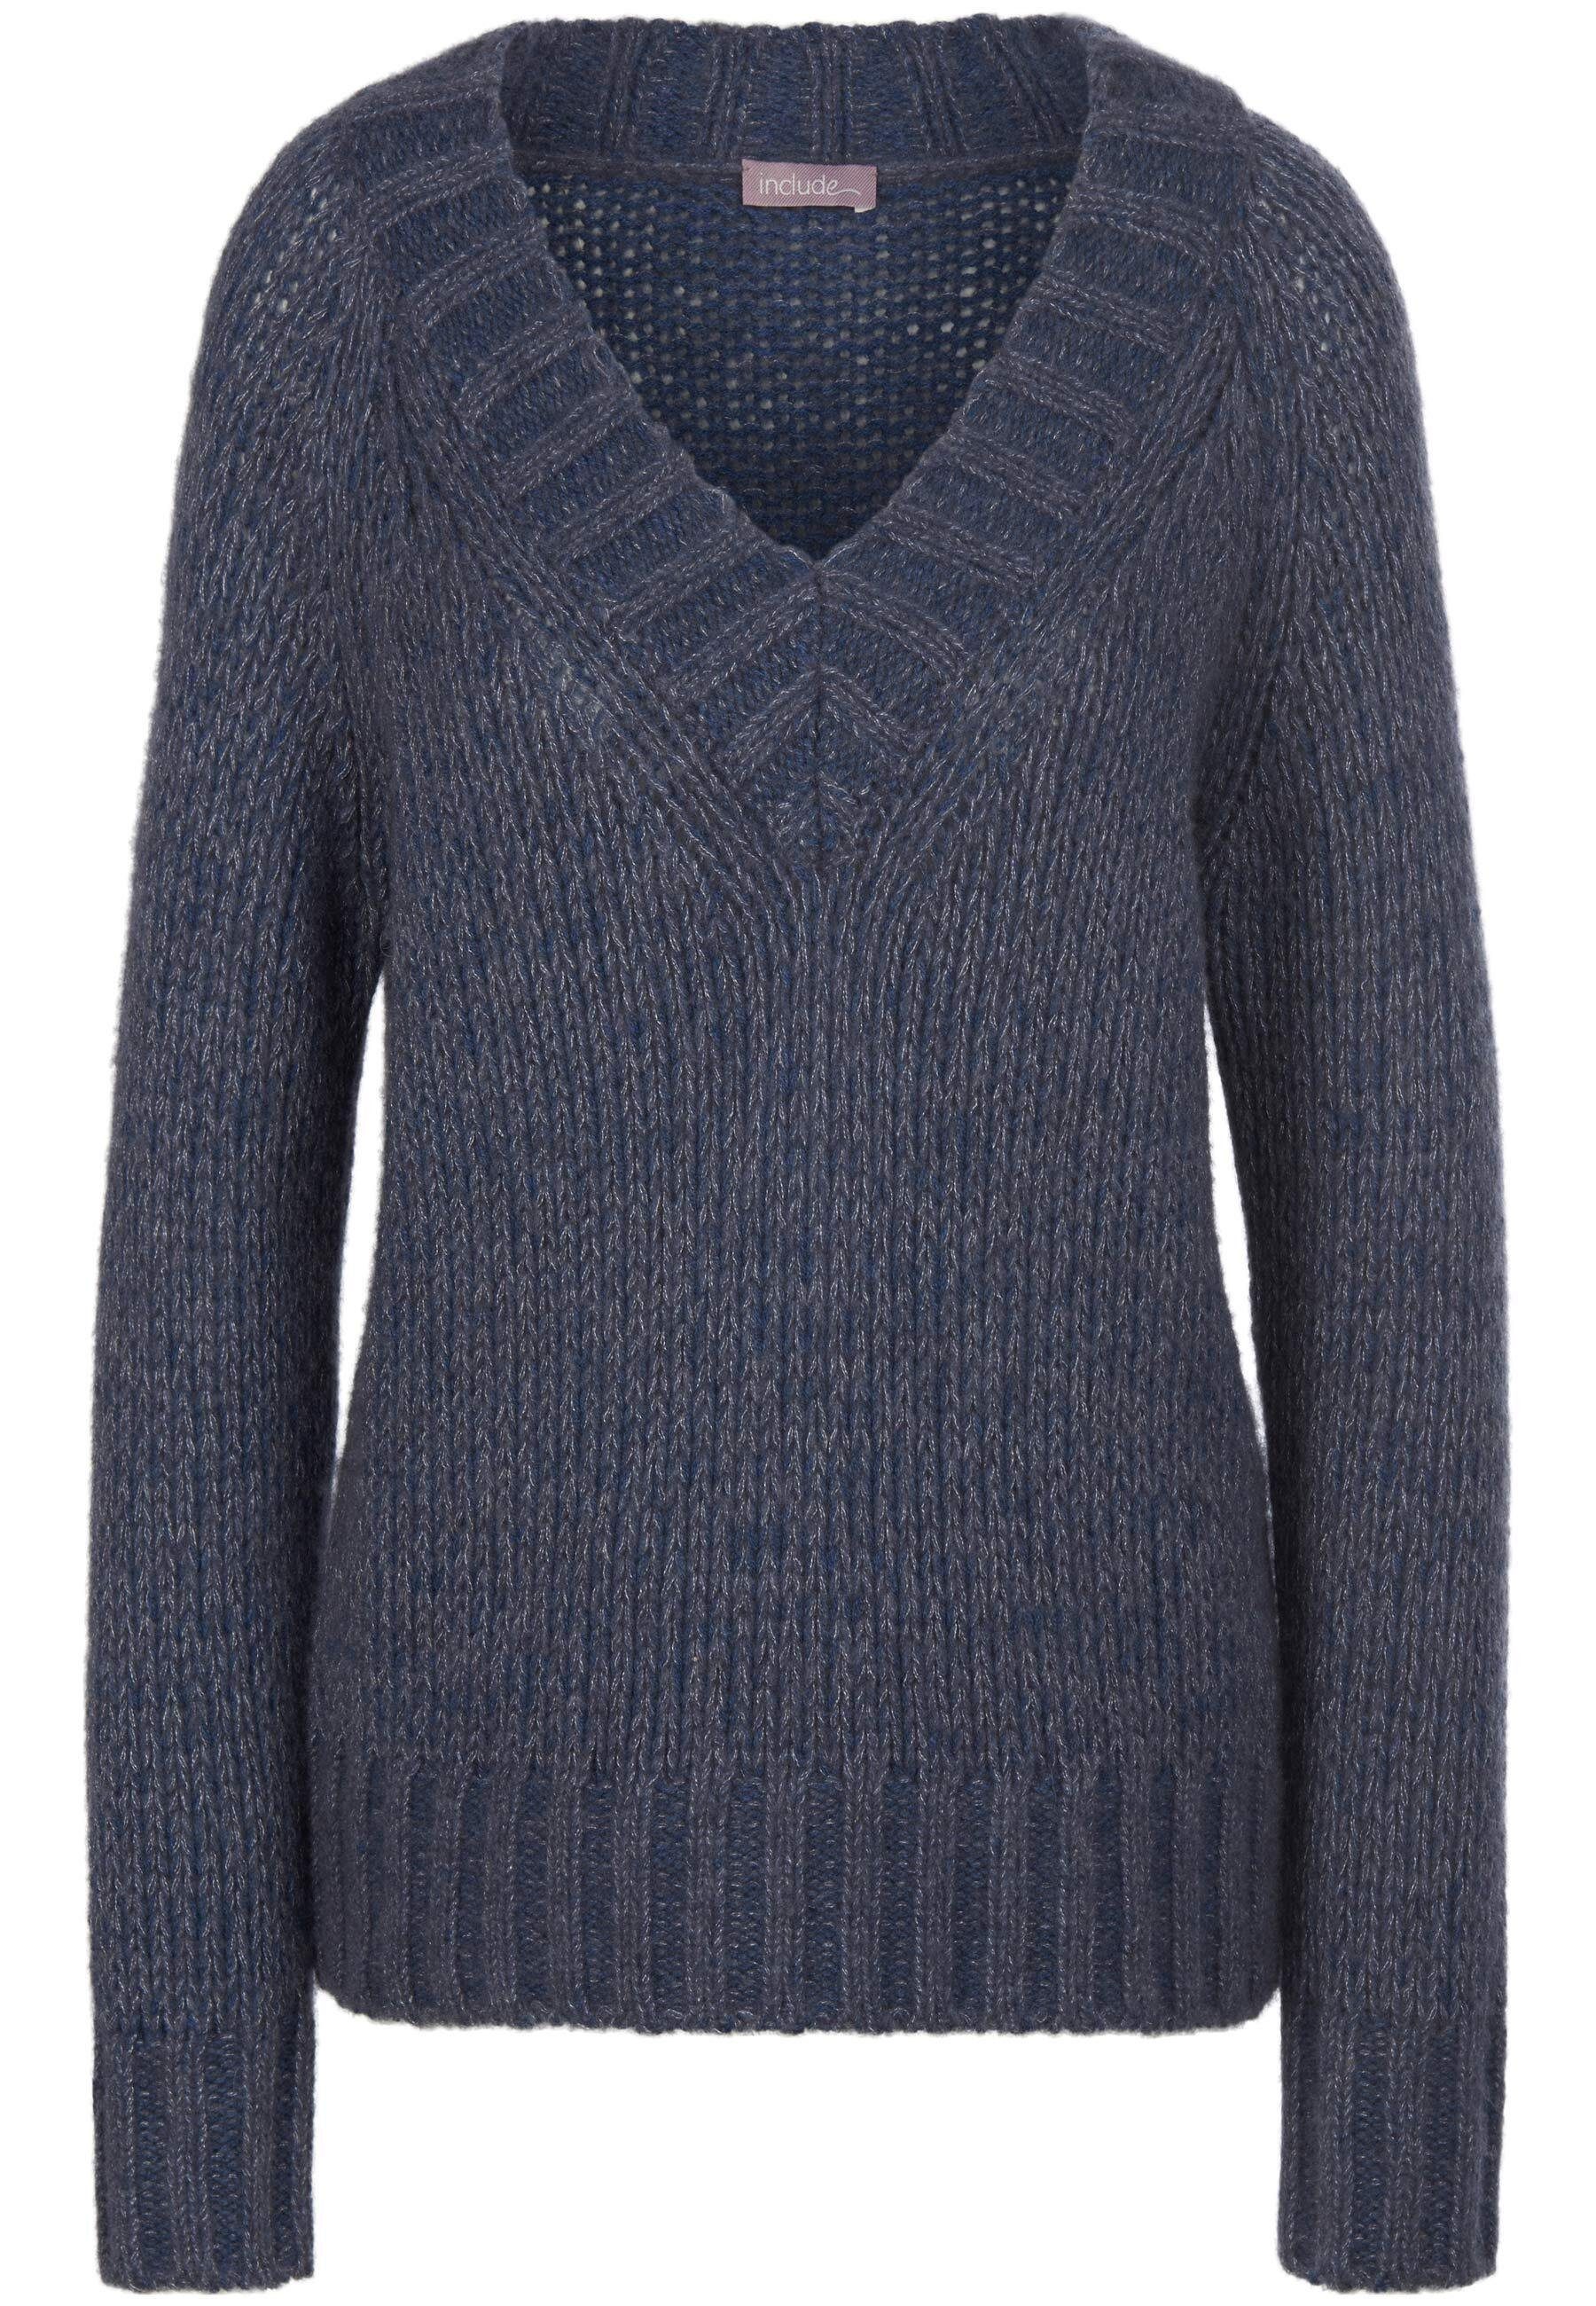 jeansblau-melange Strickpullover wool include